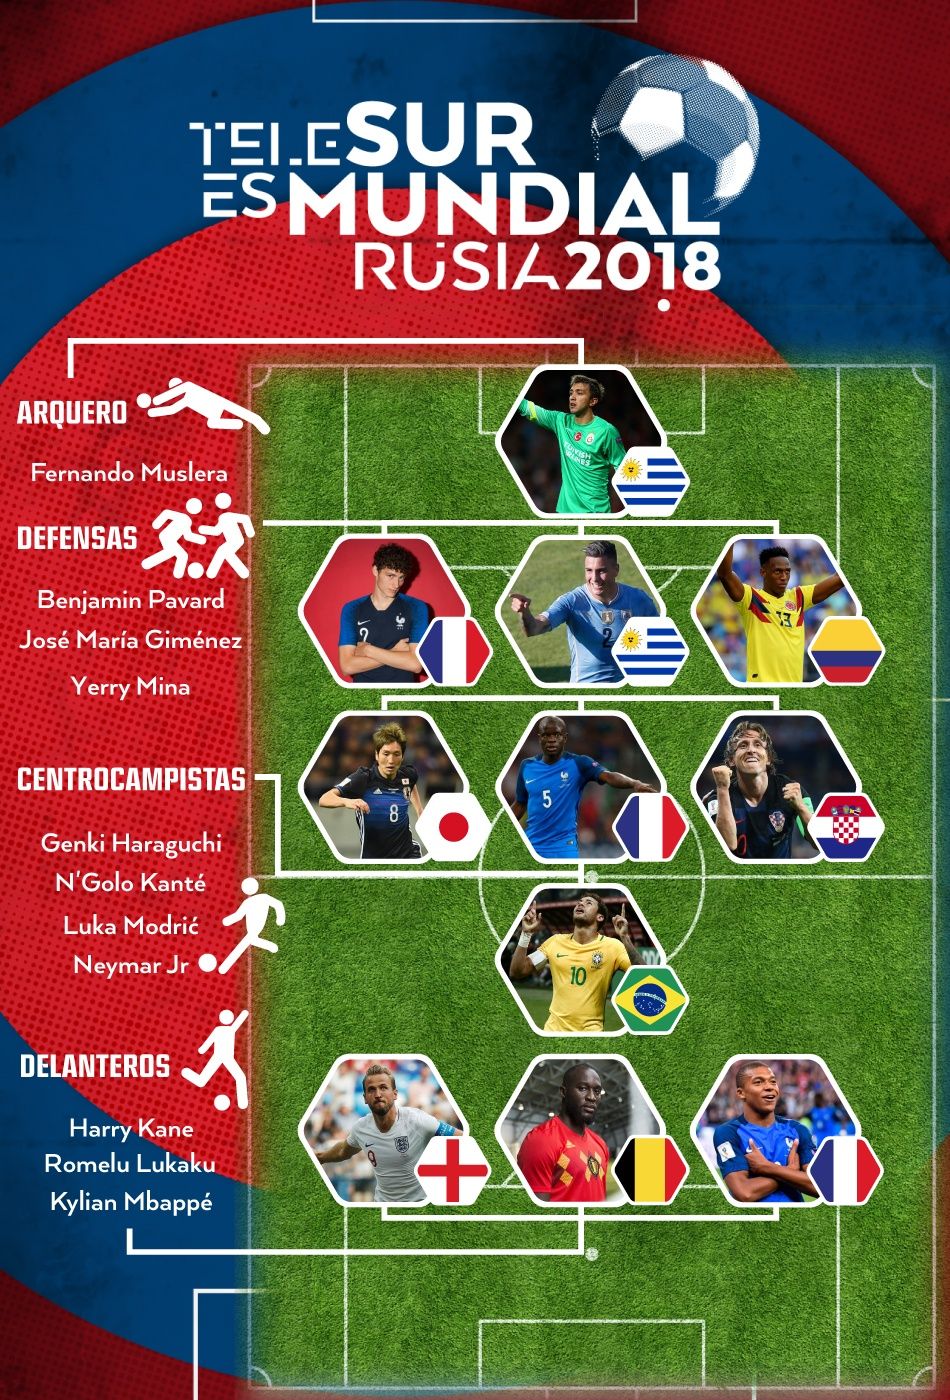 Cómo sería el del Mundial Rusia 2018? | | teleSUR